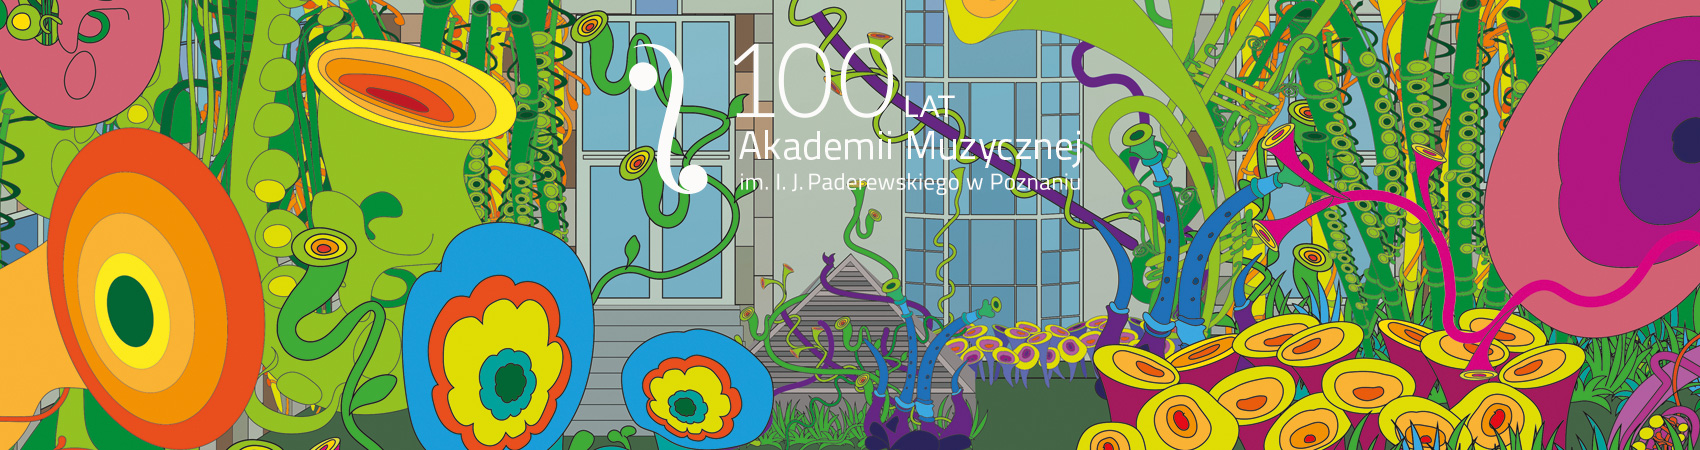 banner Akademia Muzyczna